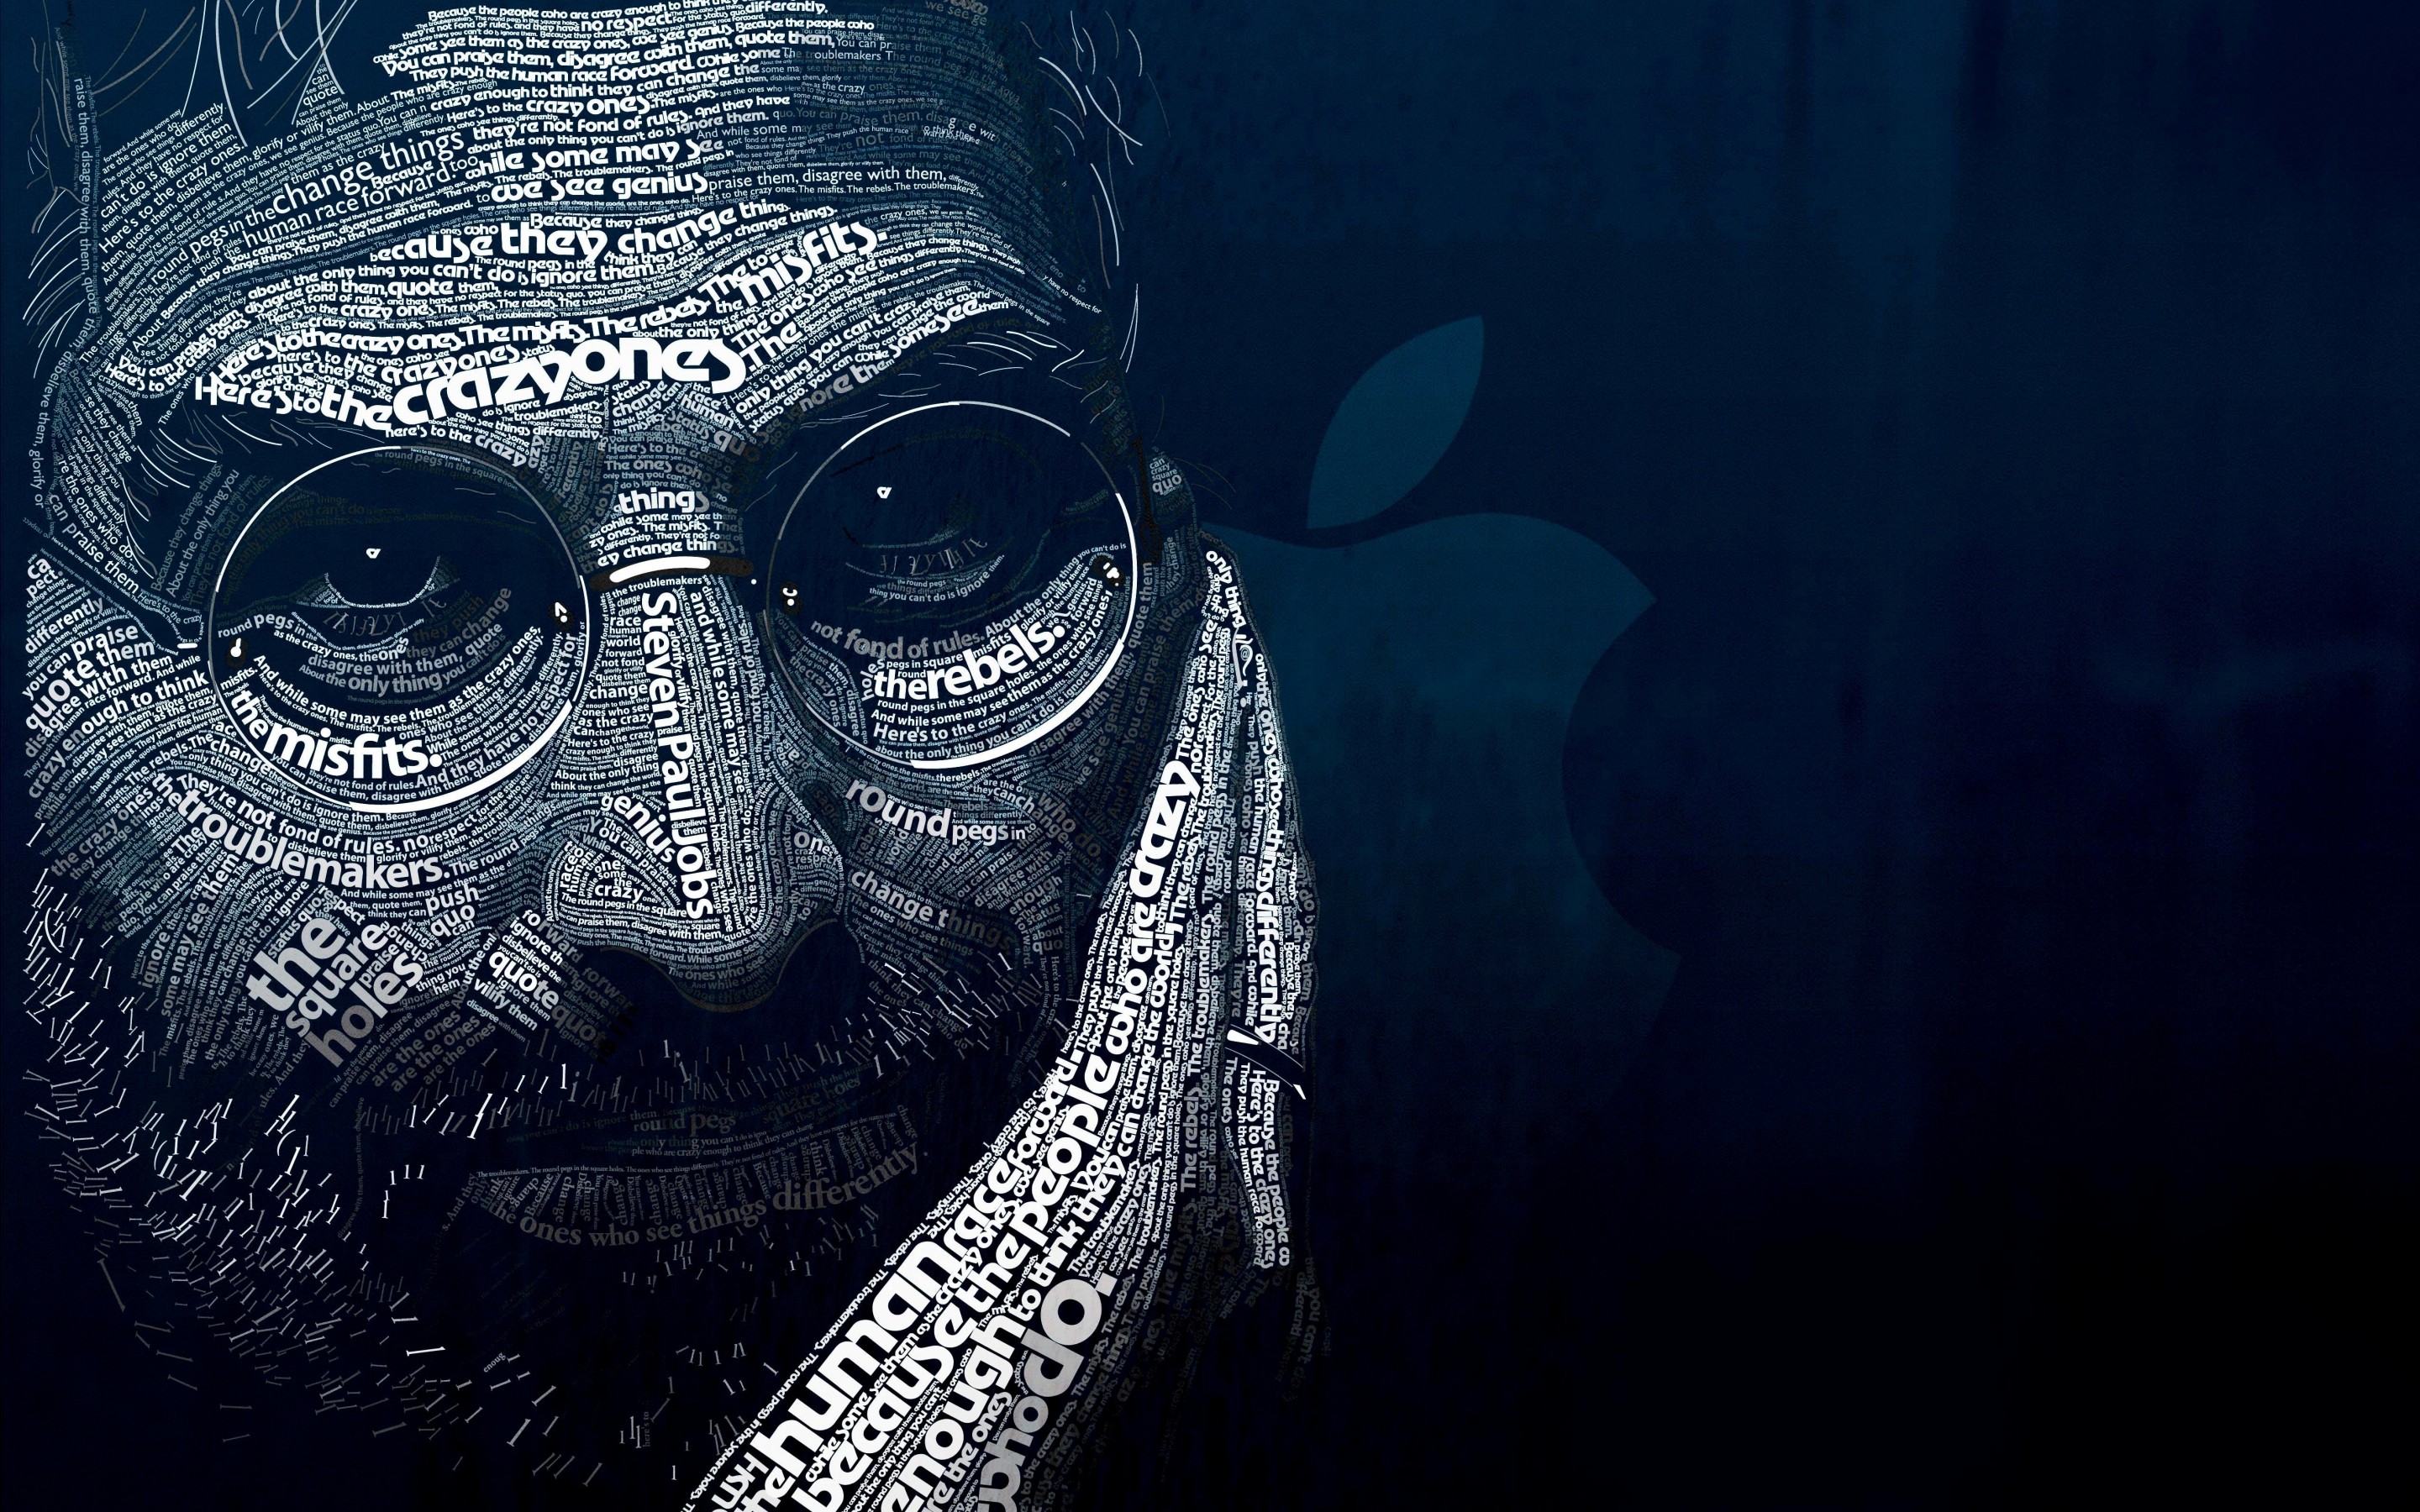 Steve Jobs Typographic Portrait Wallpaper for Desktop 2880x1800